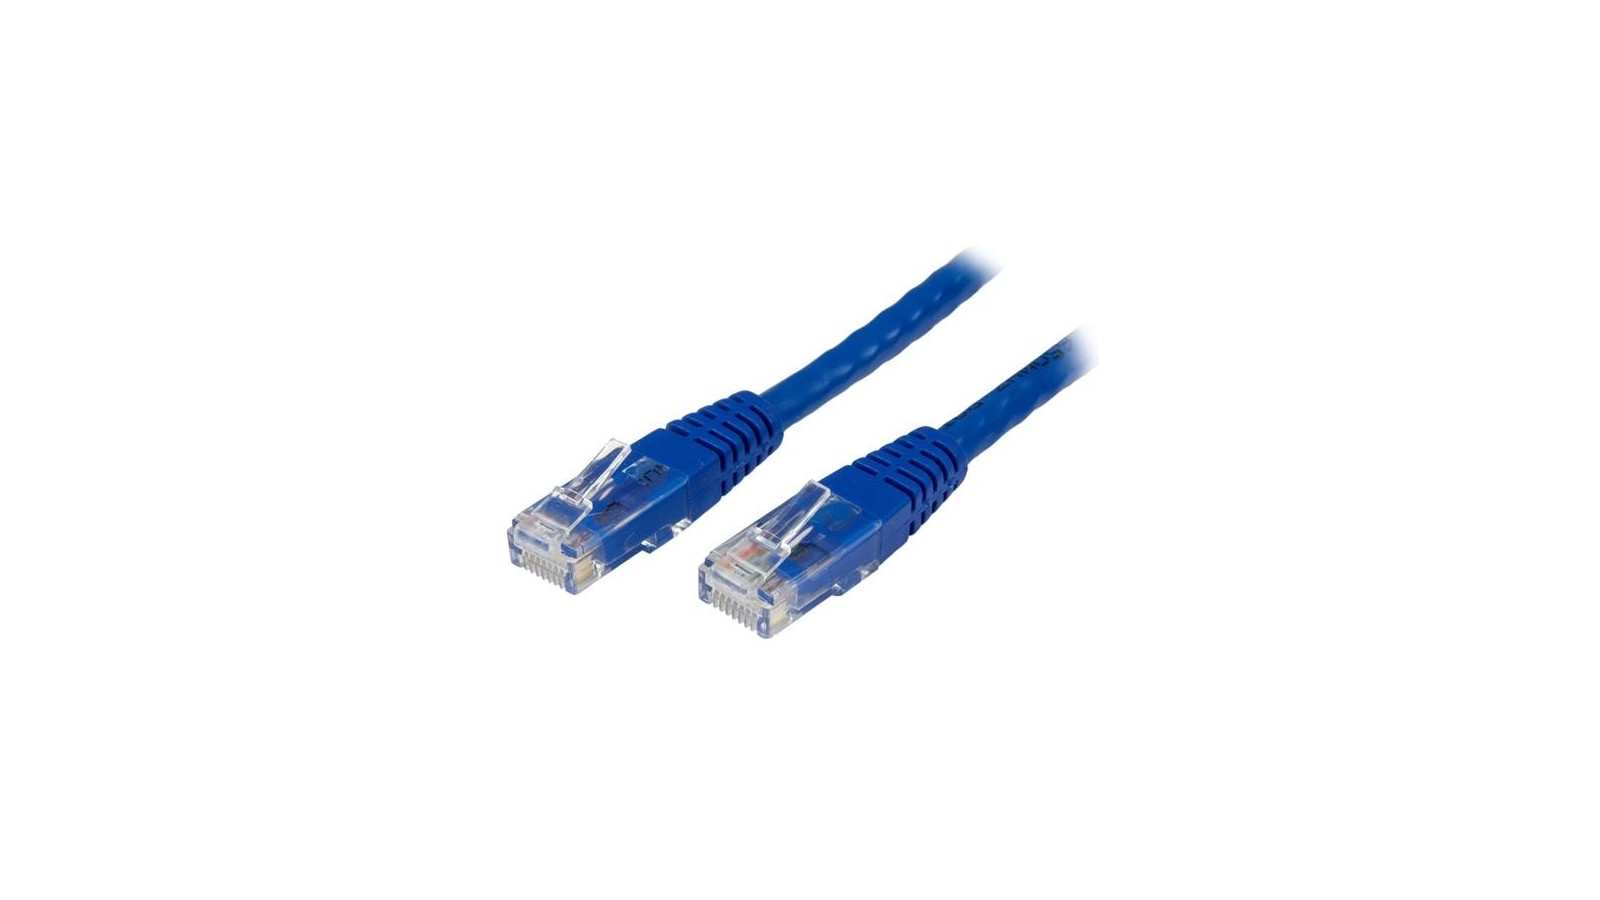 Cavo Ethernet cat 6 Utp - 3,0 metri